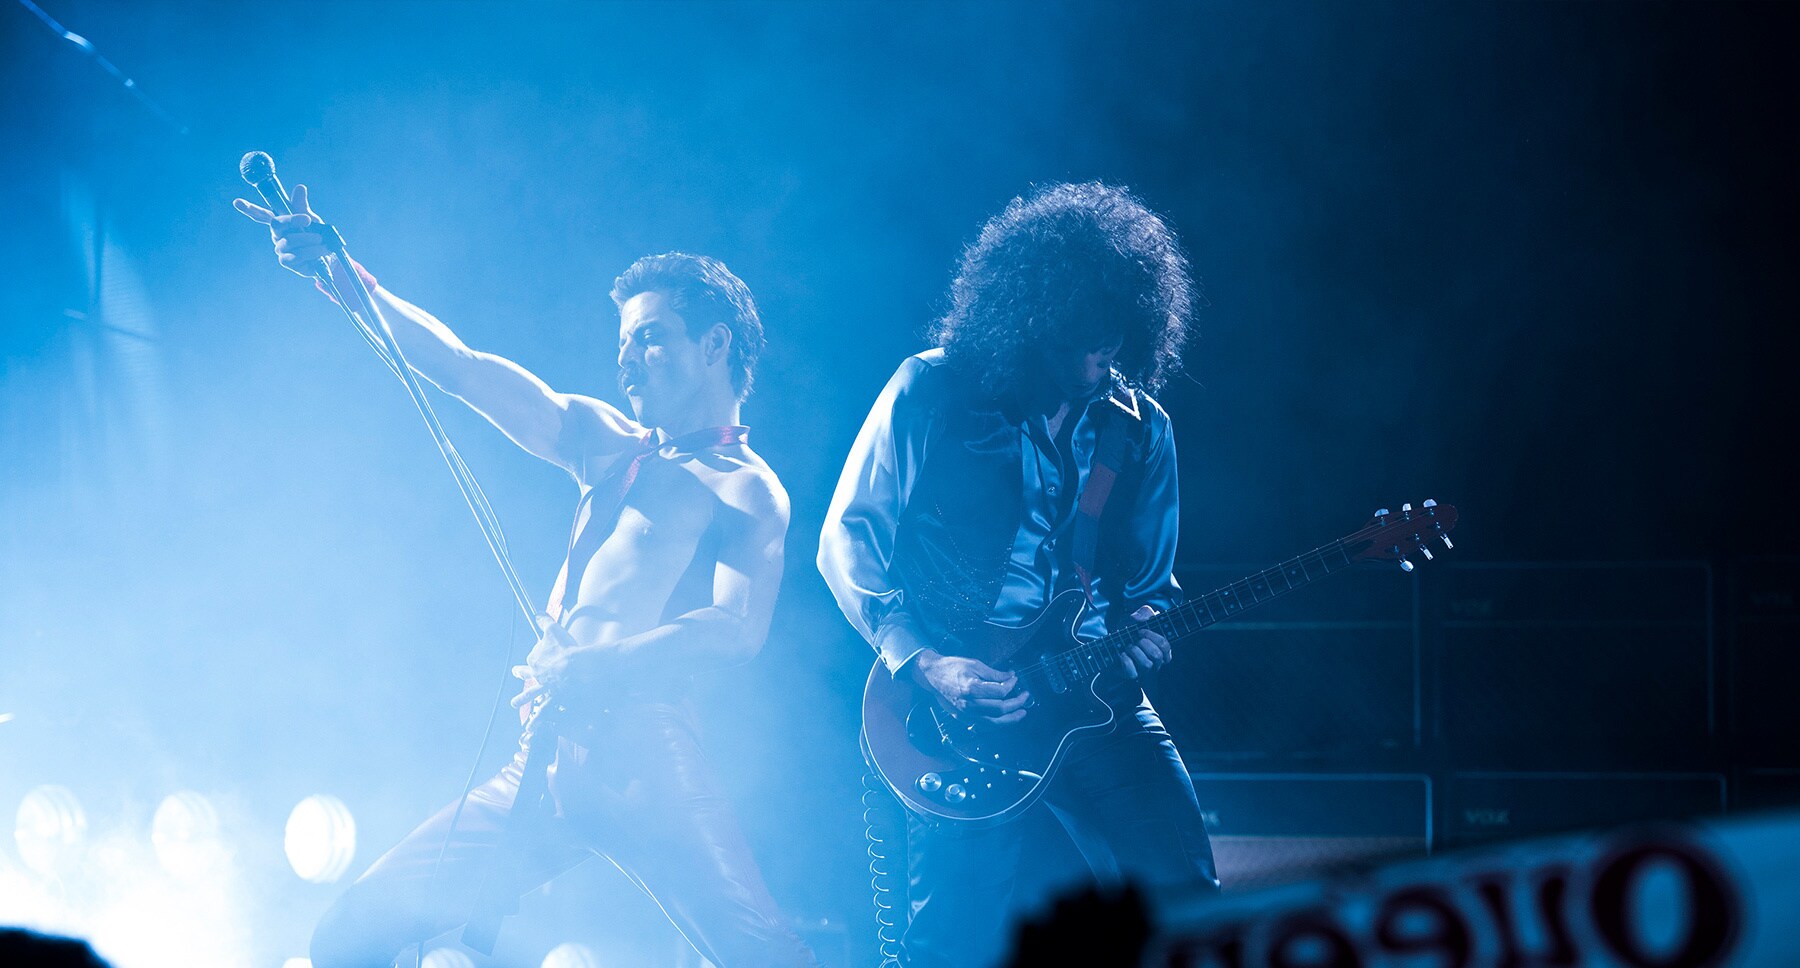 Actors Rami Malek (as Freddie Mercury) and Gwilym Lee (as Brian May) performing on stage in the movie "Bohemian Rhapsody"